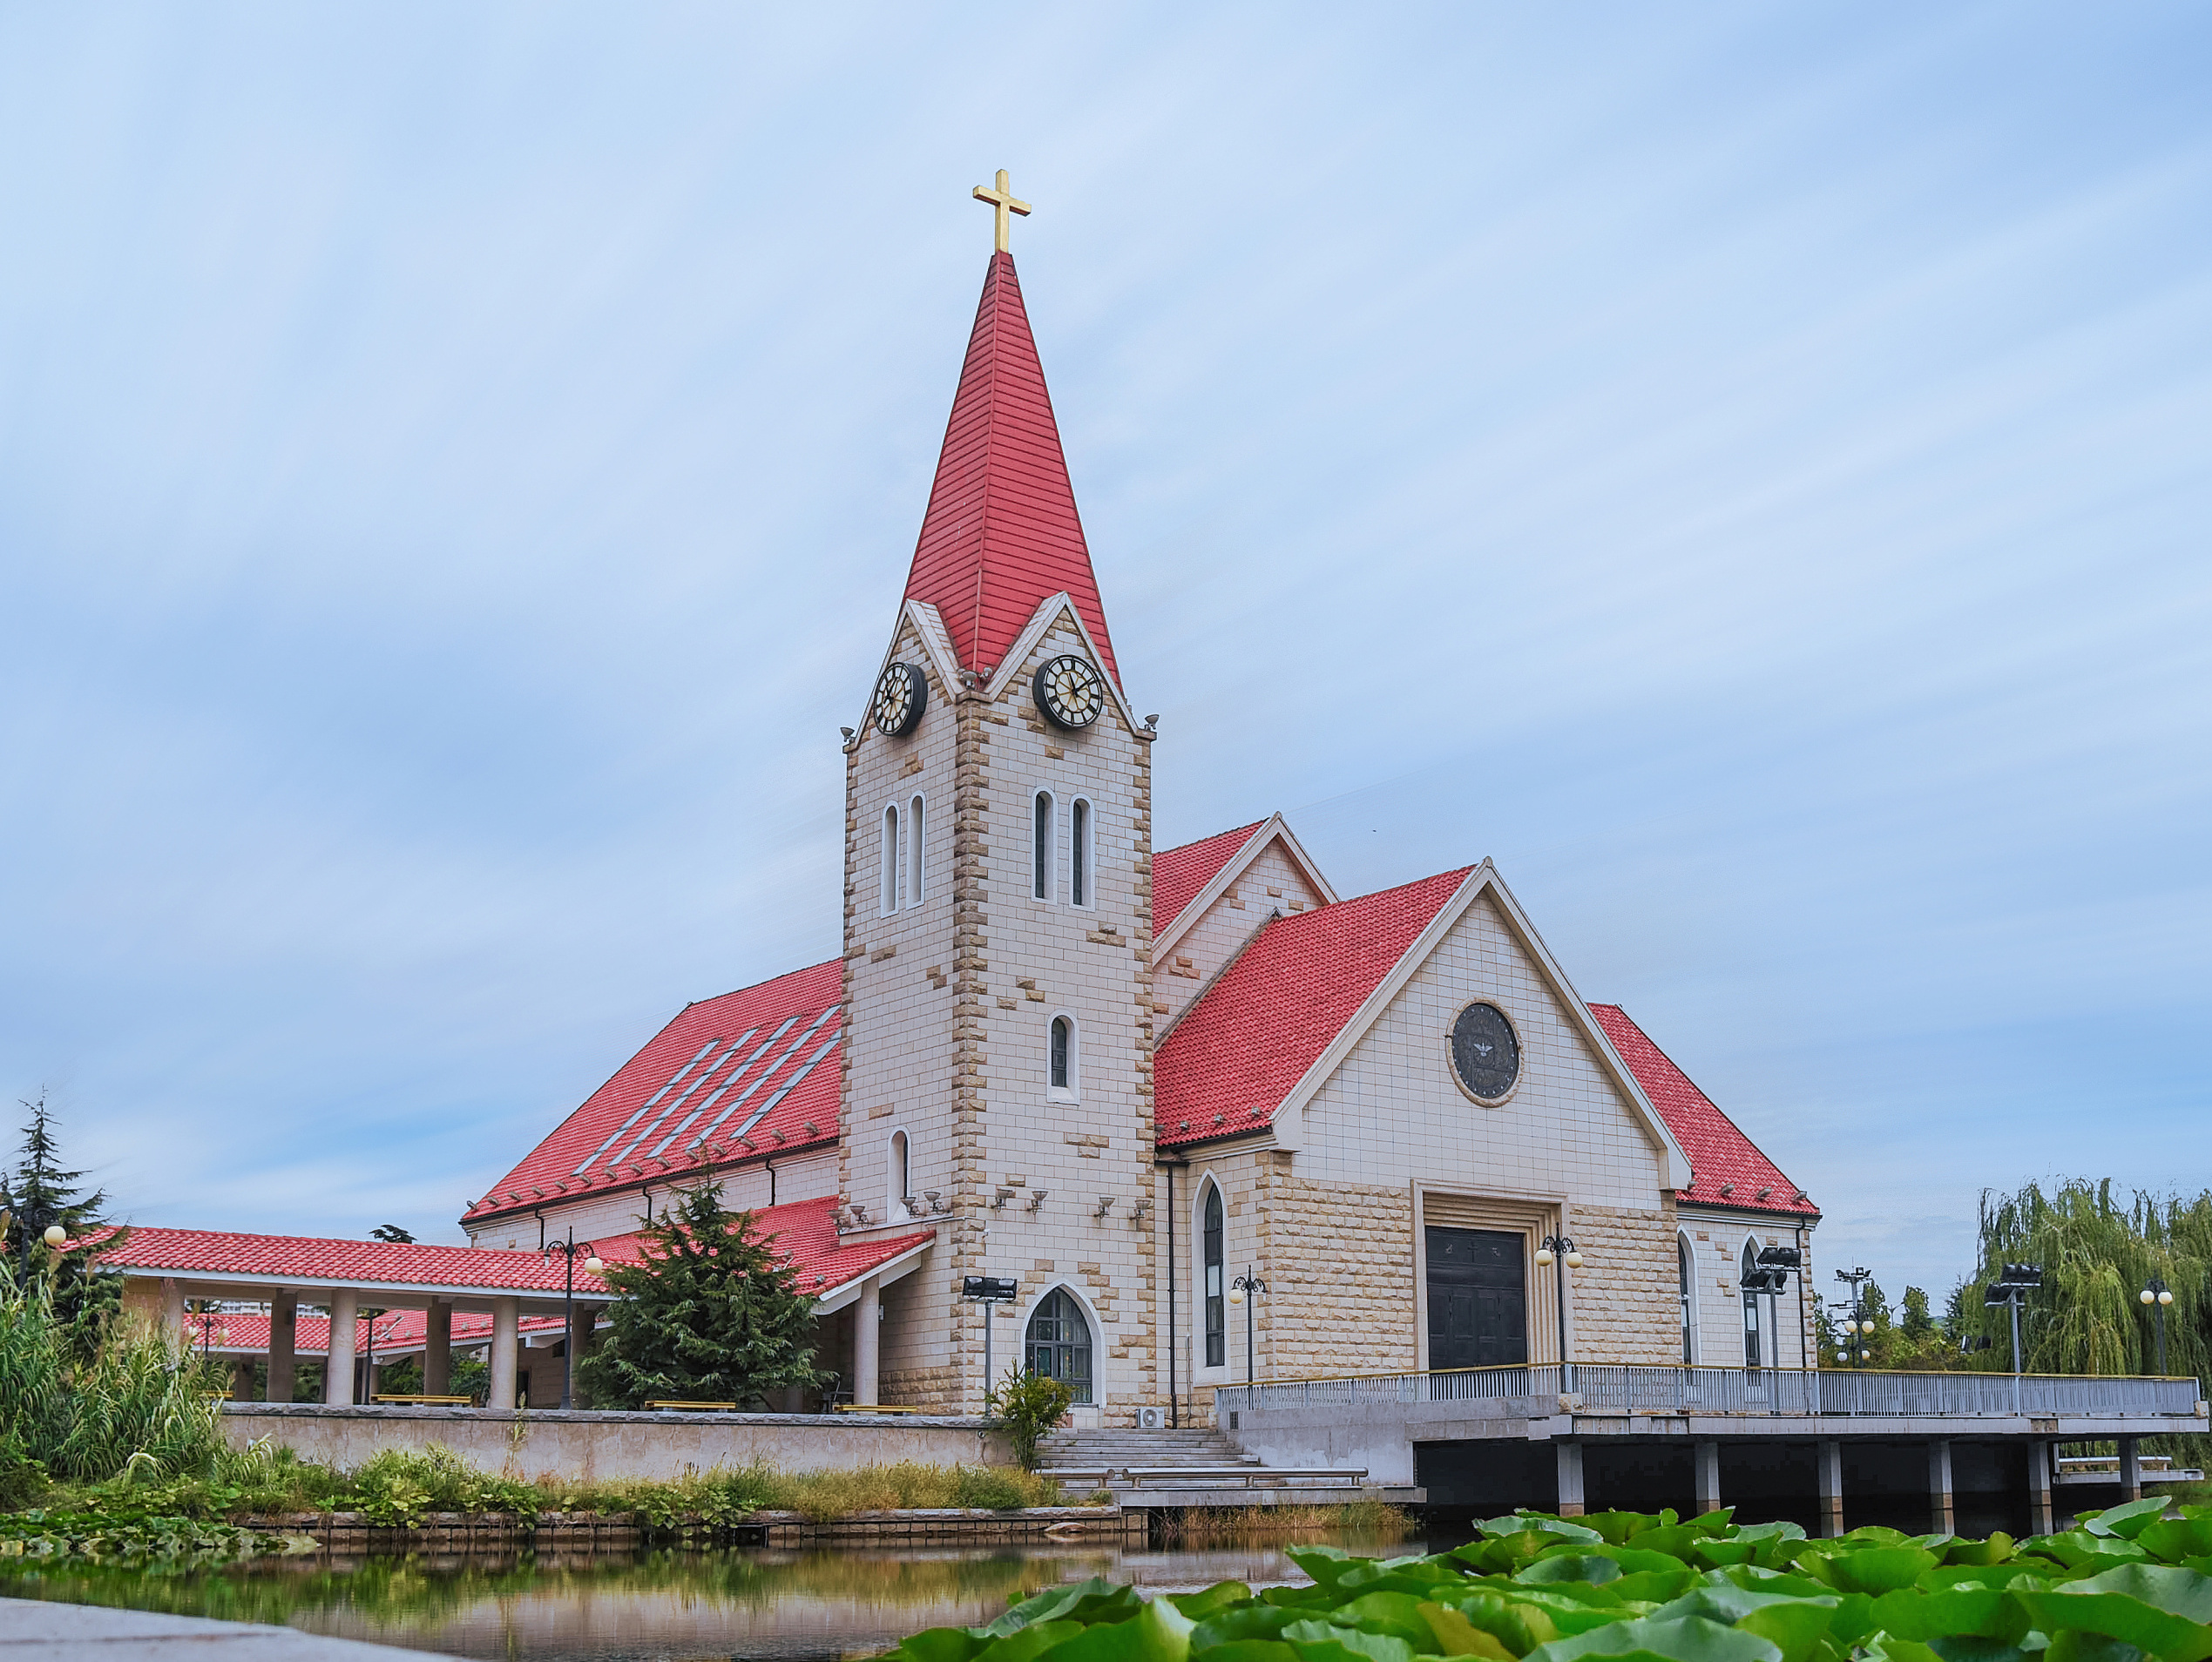 教会 风景 农村 - Pixabay上的免费照片 - Pixabay